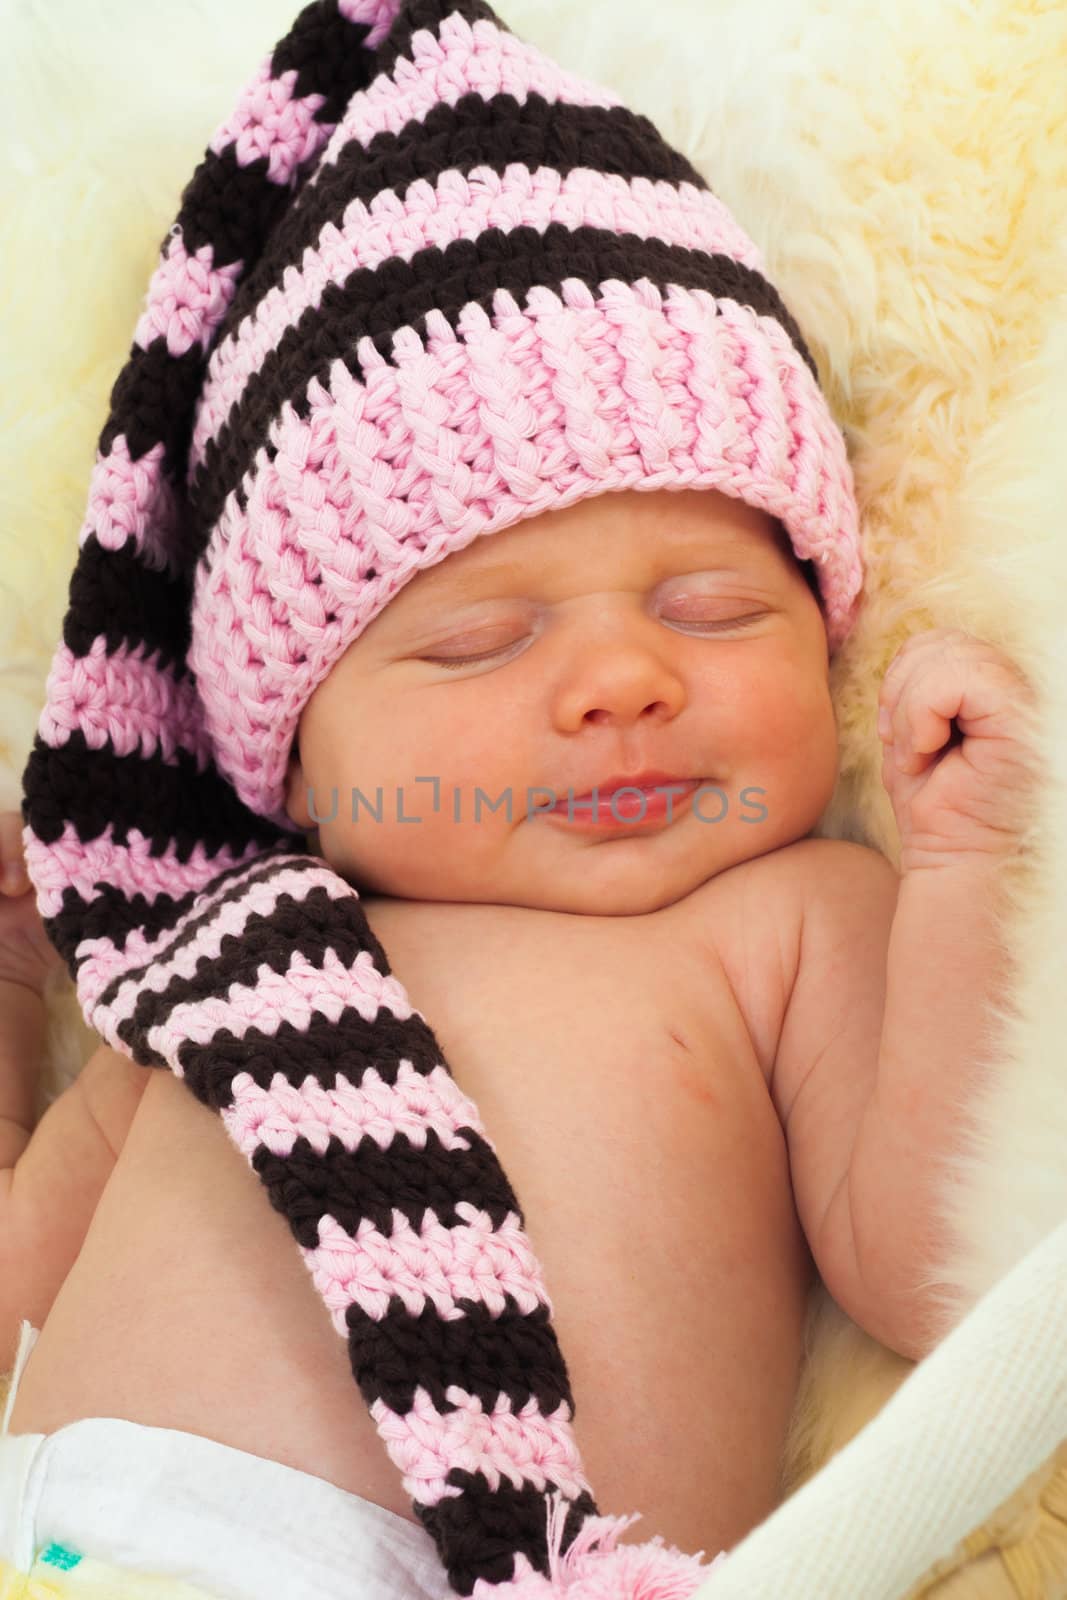 infant sleeping on a white sheepskin in a wicker basket. by sk11303